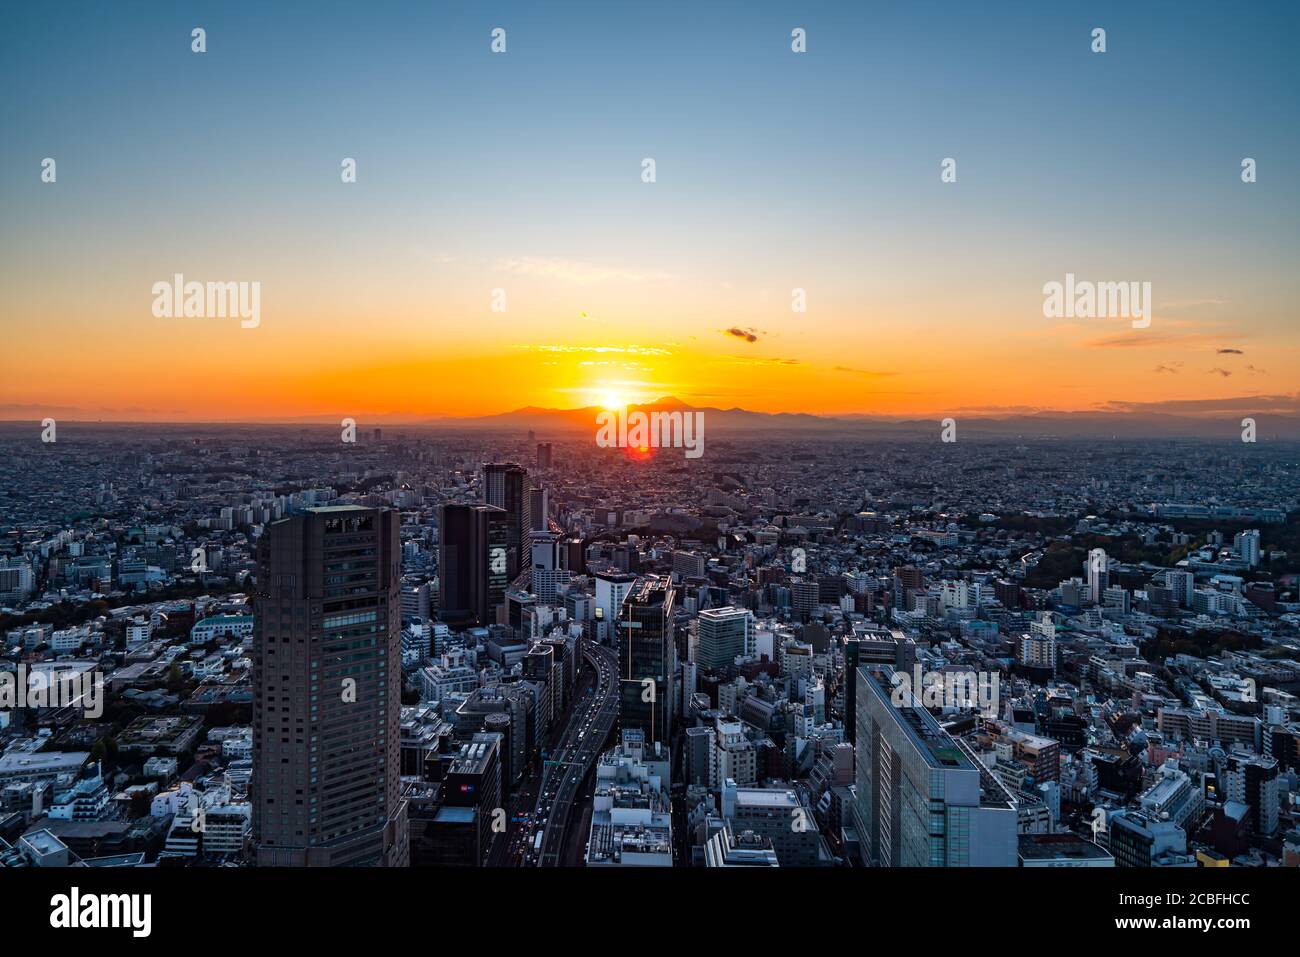 Tokyo, Giappone - 16 novembre 2019: Piazza Shibuya Scramble aperta nel novembre 2019 a Shibuya, Tokyo, Giappone. Il tetto 'Shibuya Sky' può prendere il charg Foto Stock